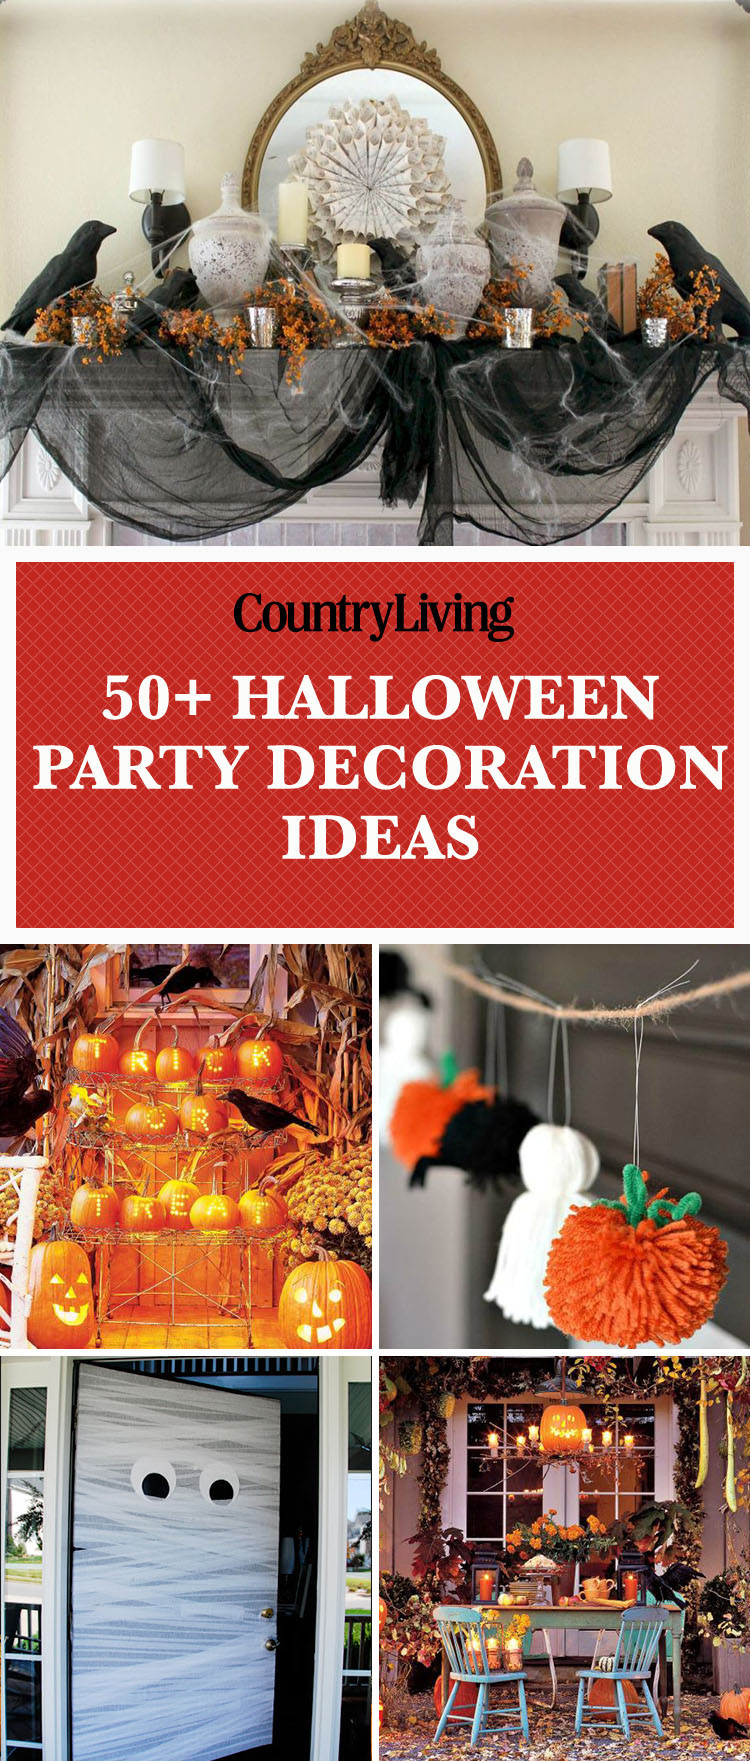 Halloween Party Centerpieces Ideas
 56 Fun Halloween Party Decorating Ideas Spooky Halloween